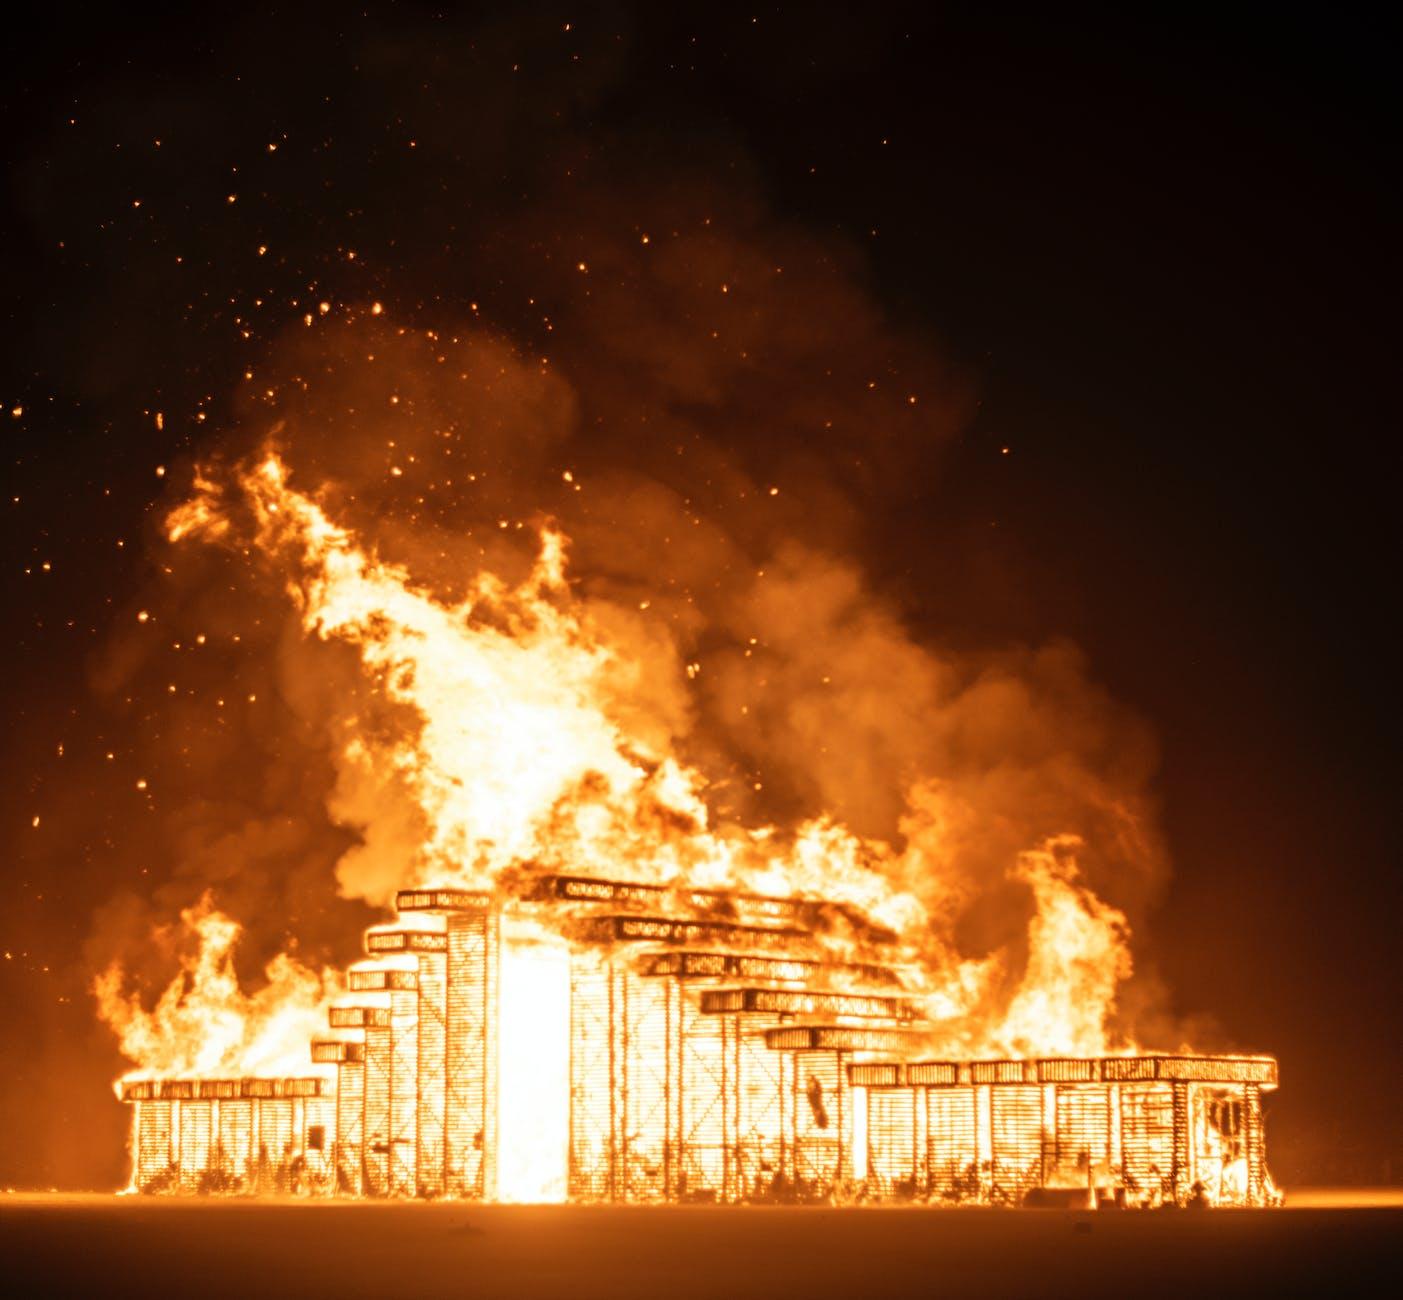 burning building at night